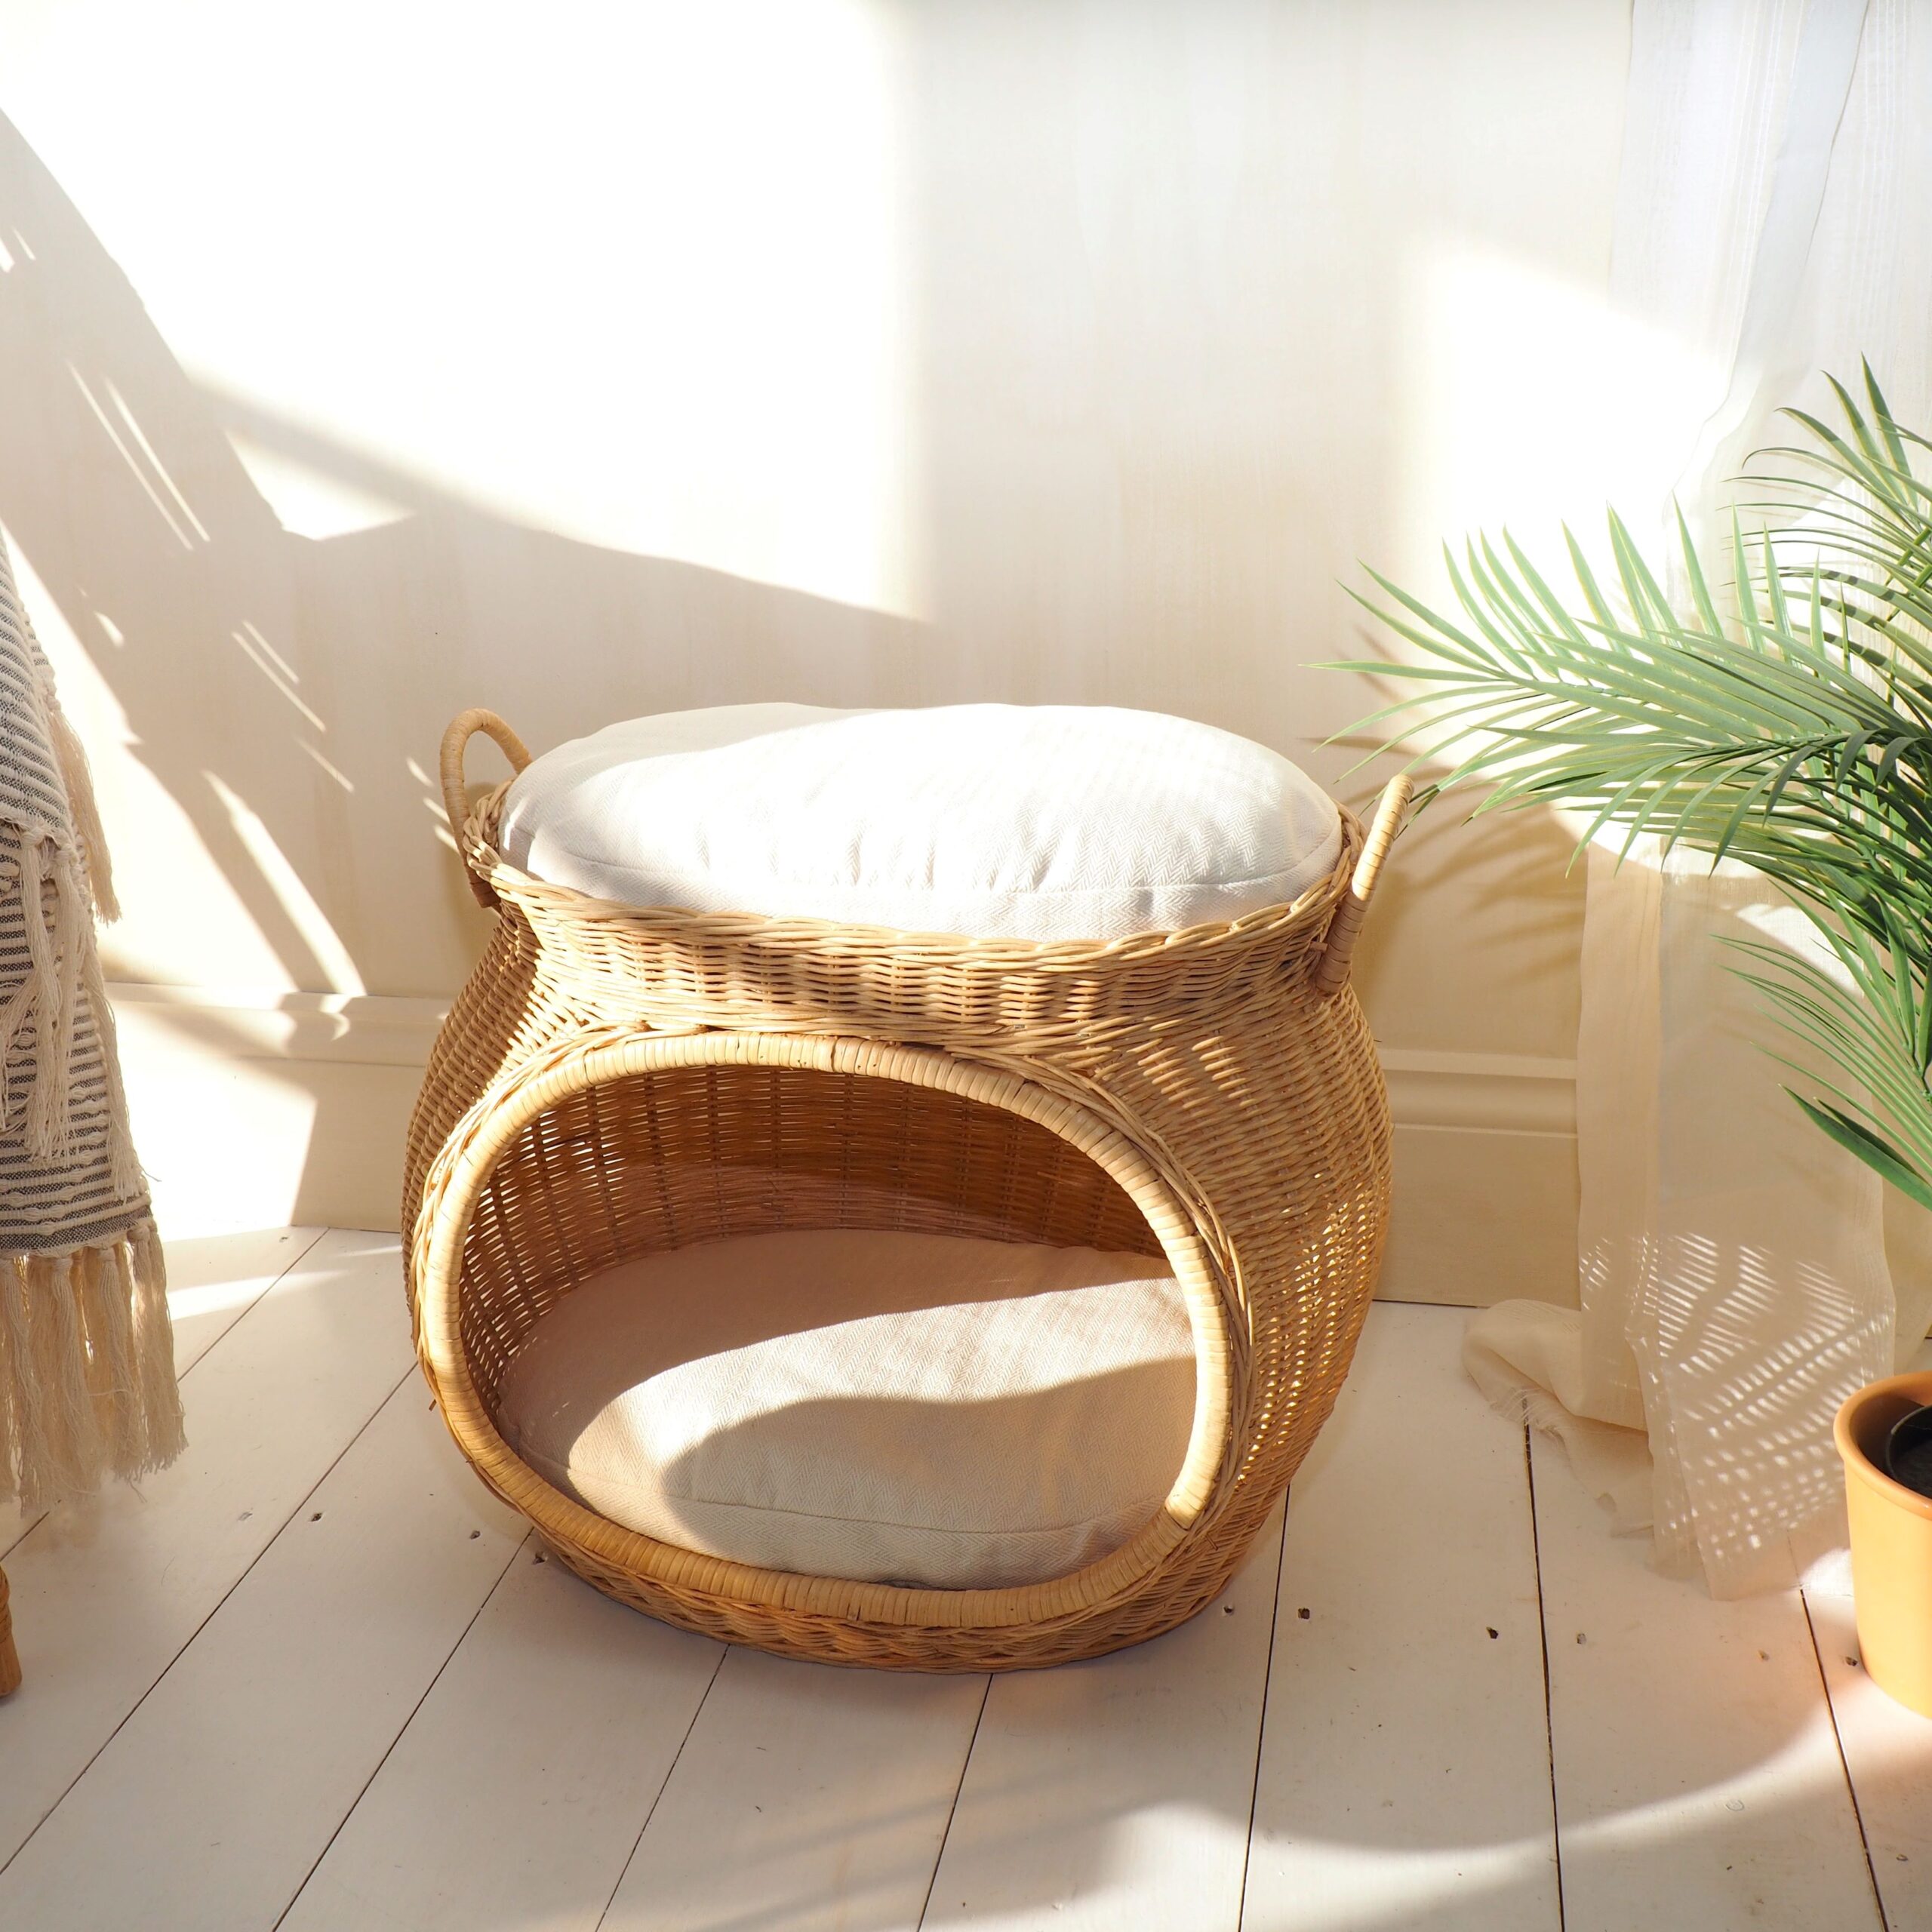 Wicker cat basket on sunny wooden floor